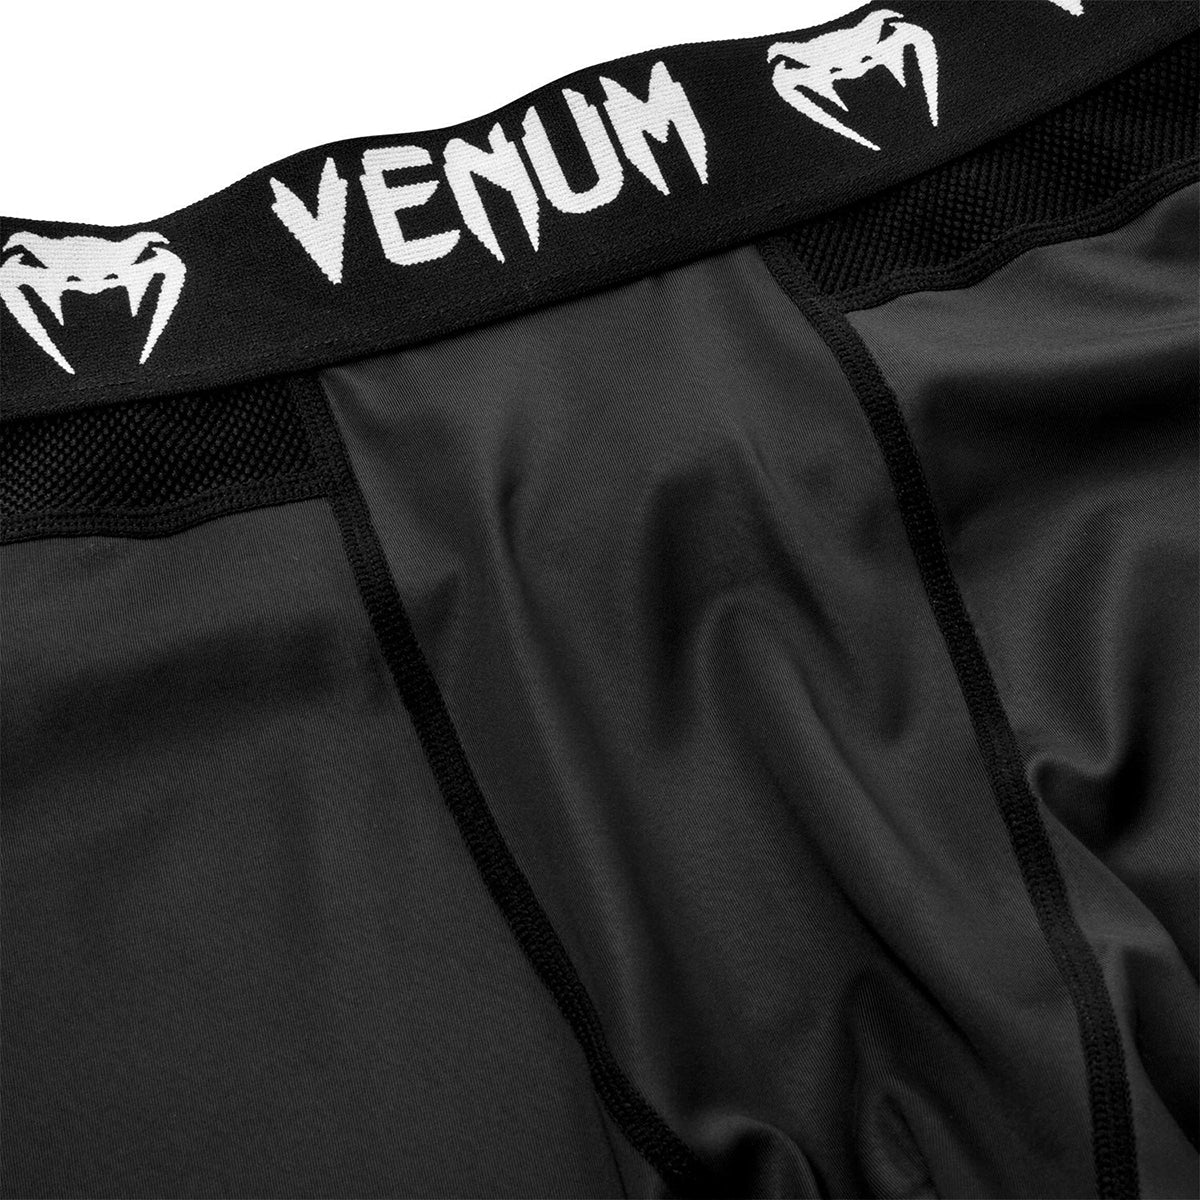 Venum Contender 4.0 MMA Compression Spats - Black/Gray/White Venum